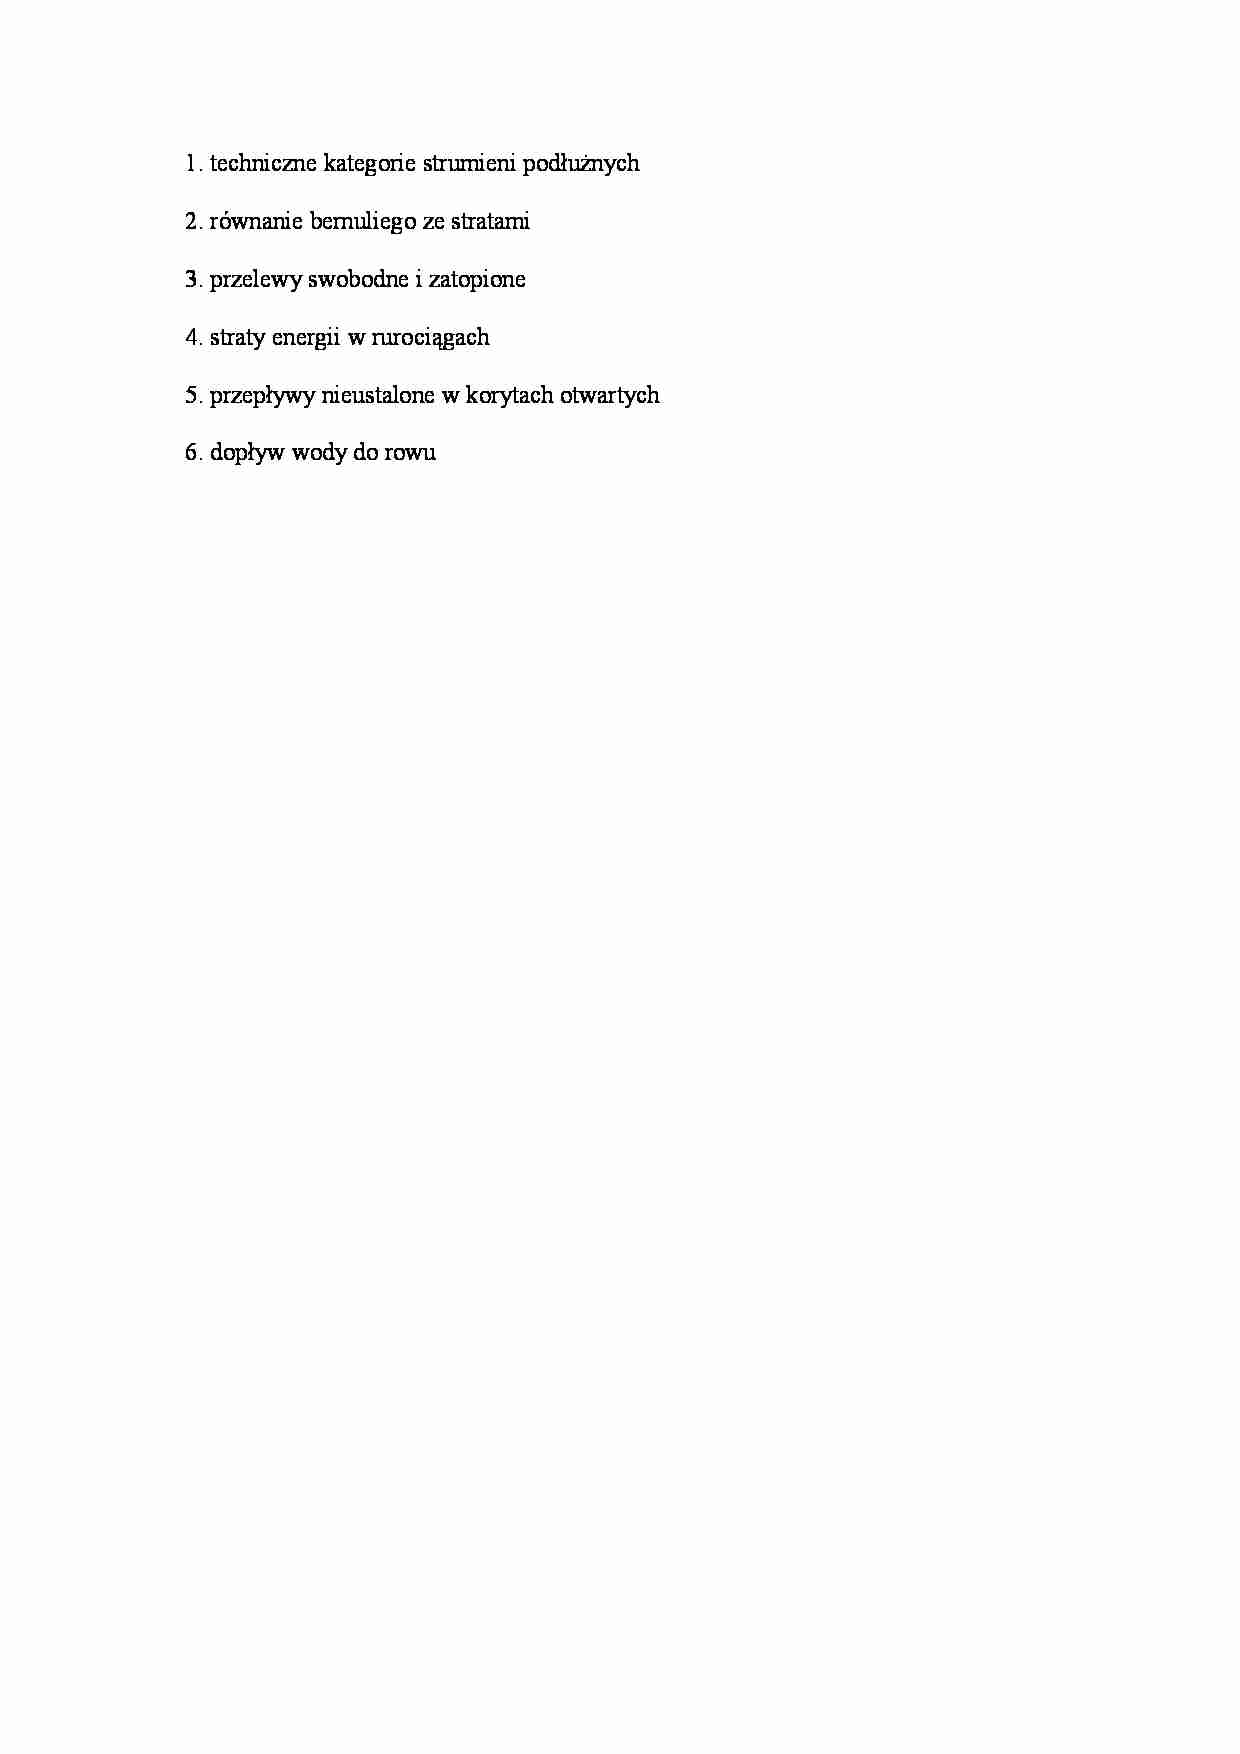 Egzamin z hydrauliki - pytania - strona 1